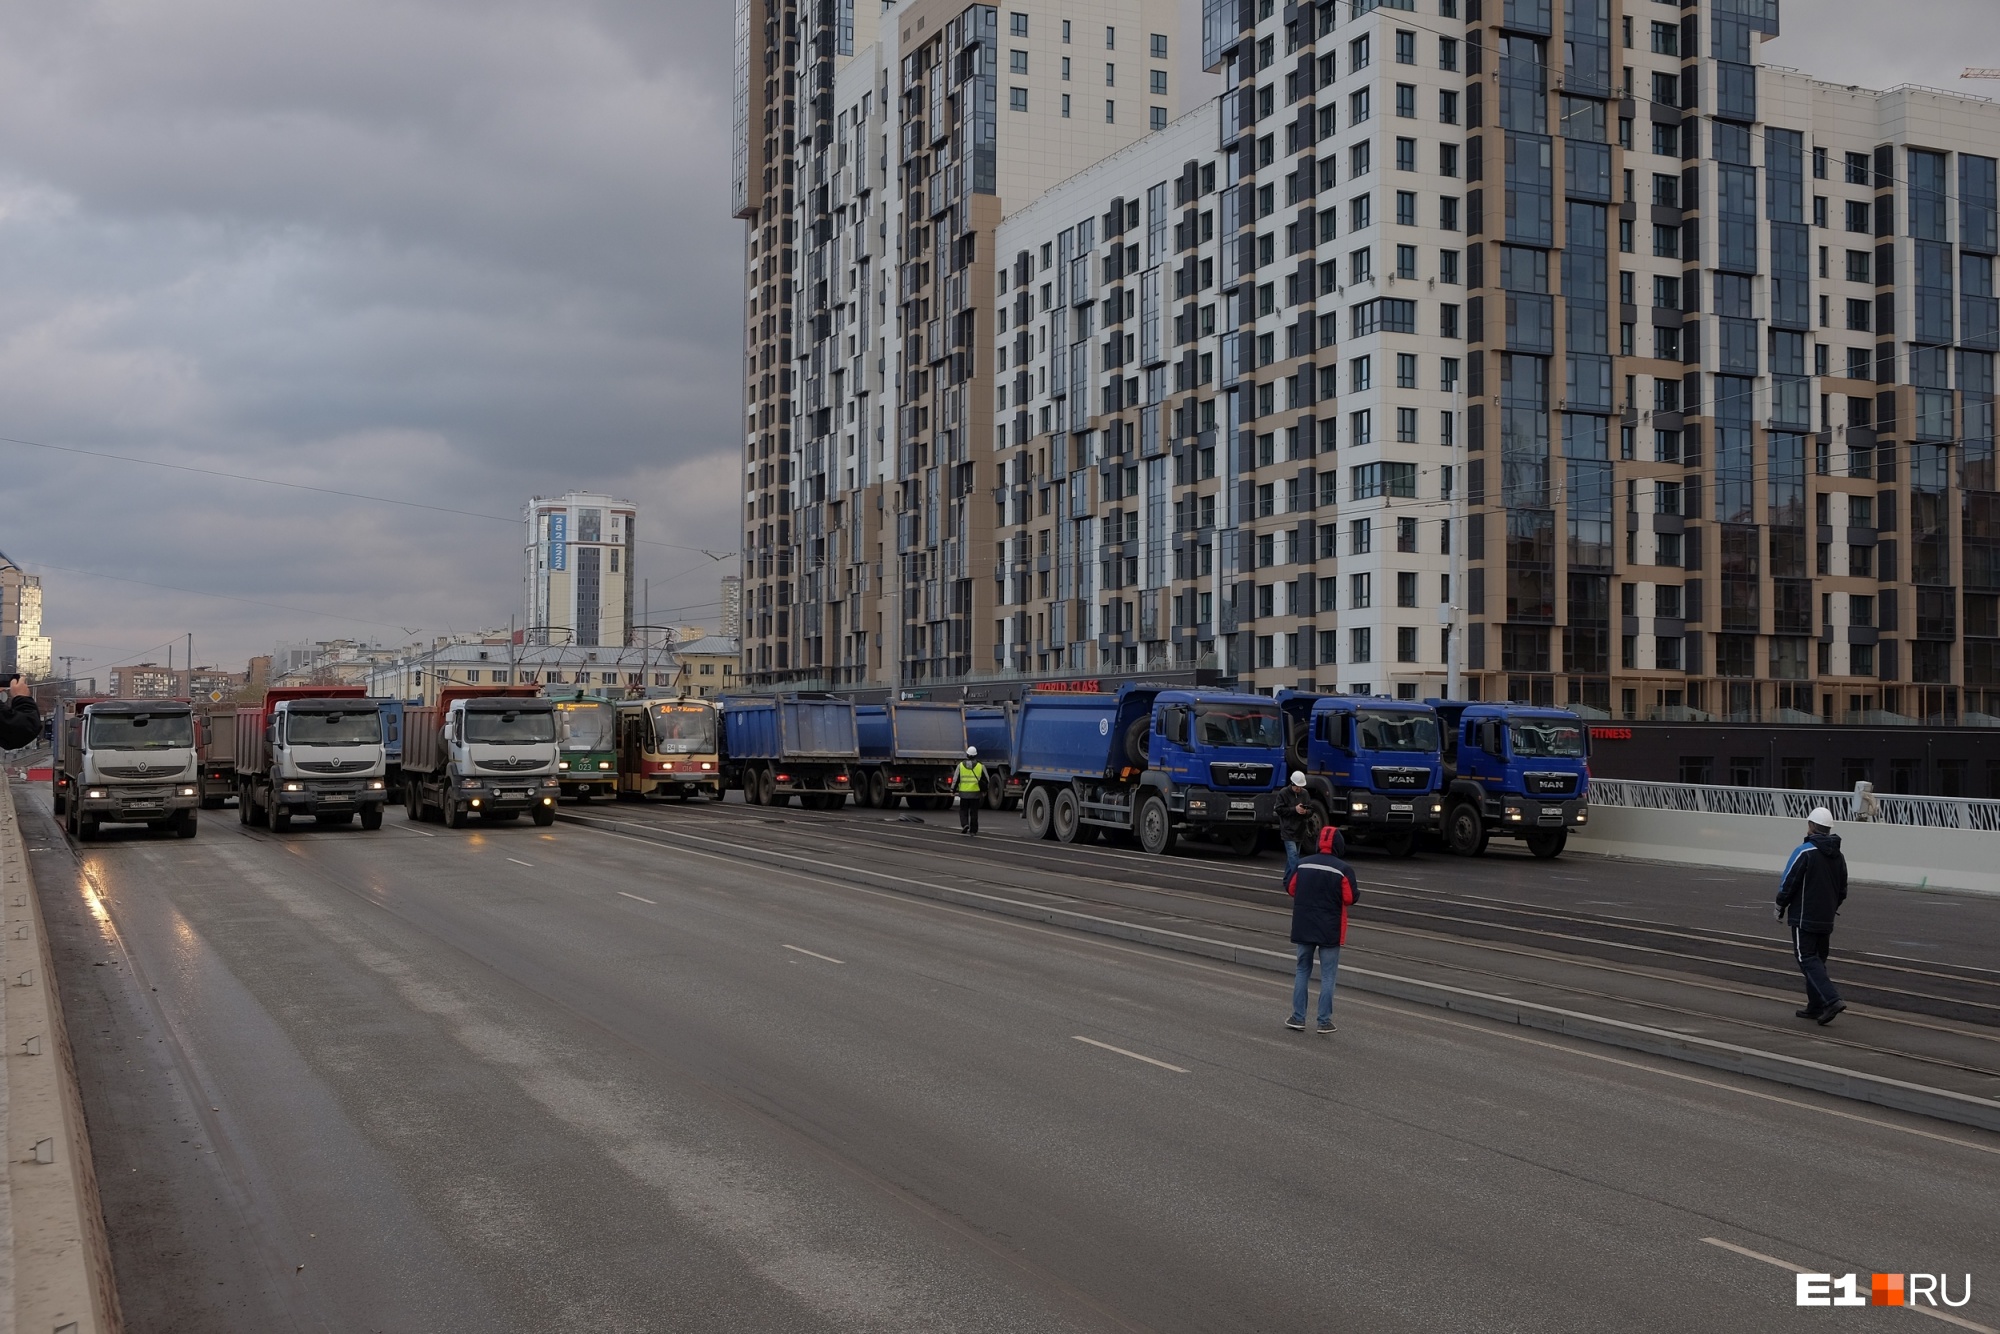 Проверка на прочность: по отремонтированному Макаровскому мосту проехали самосвалы и трамваи